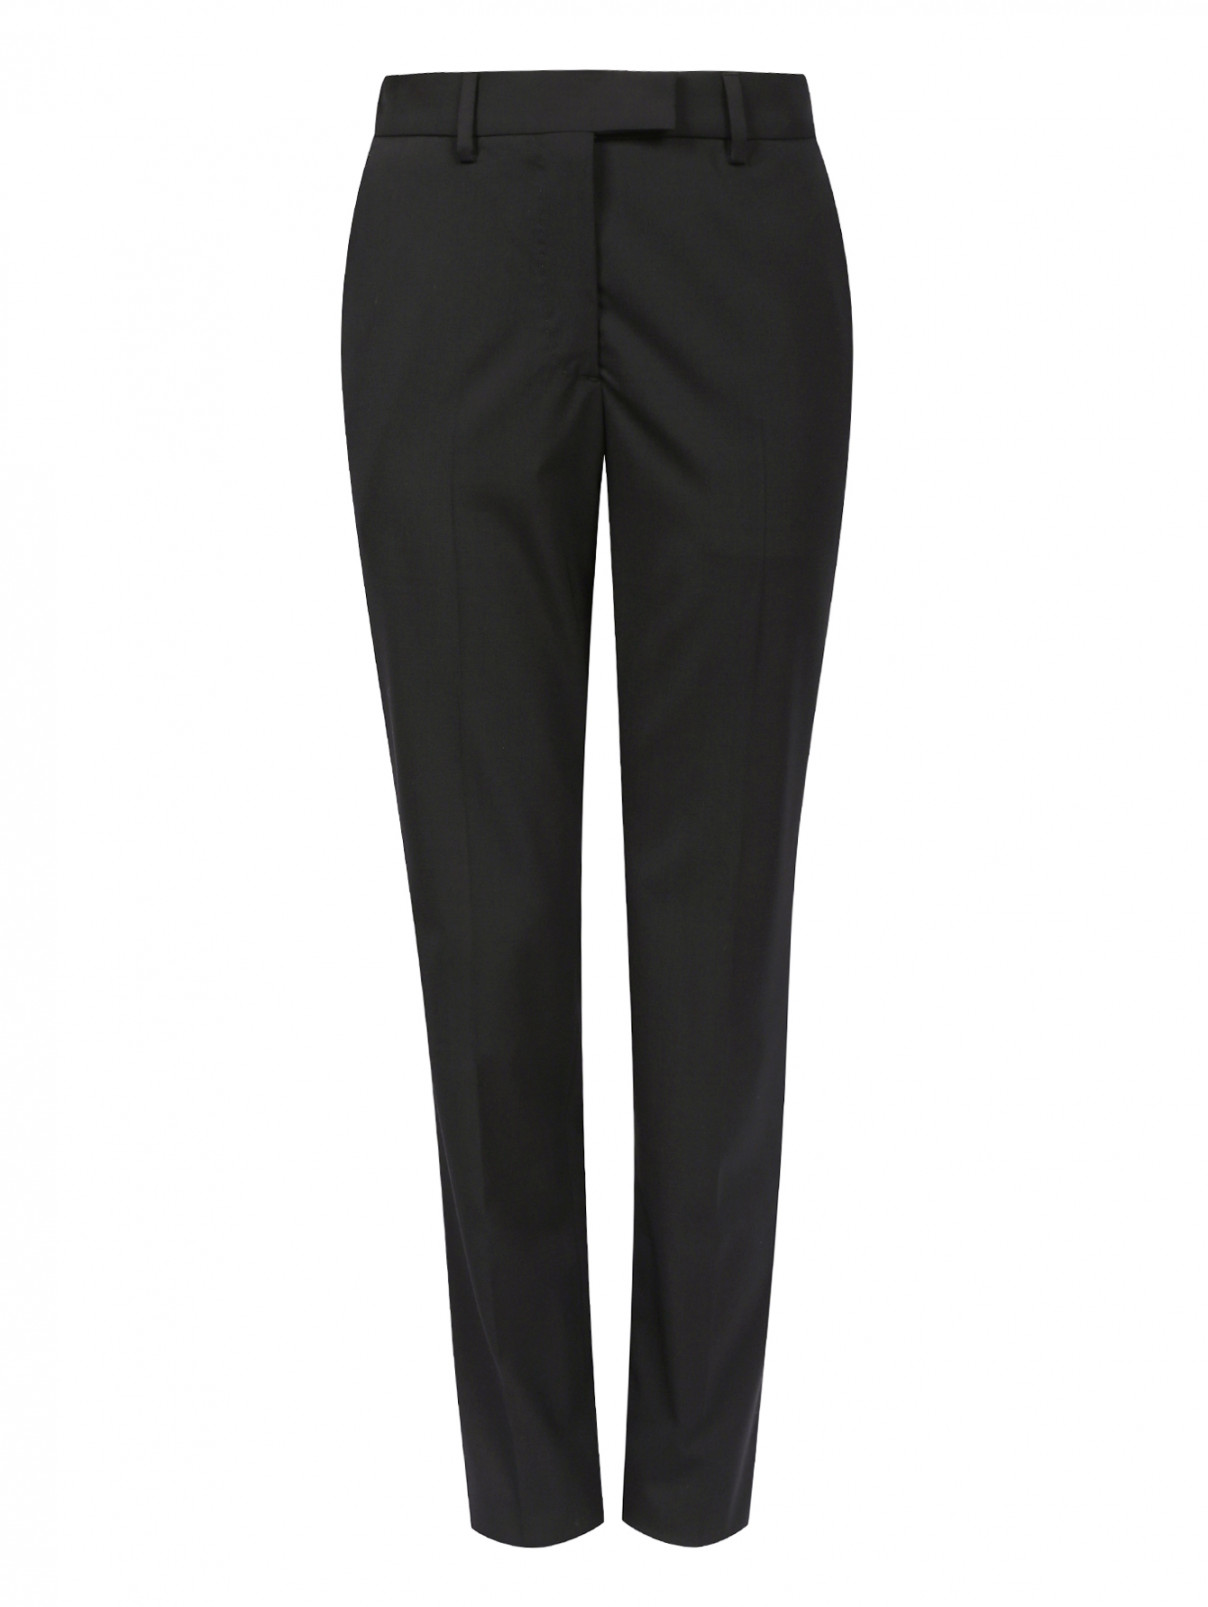 Узкие брюки из шерсти Jean Paul Gaultier  –  Общий вид  – Цвет:  Черный